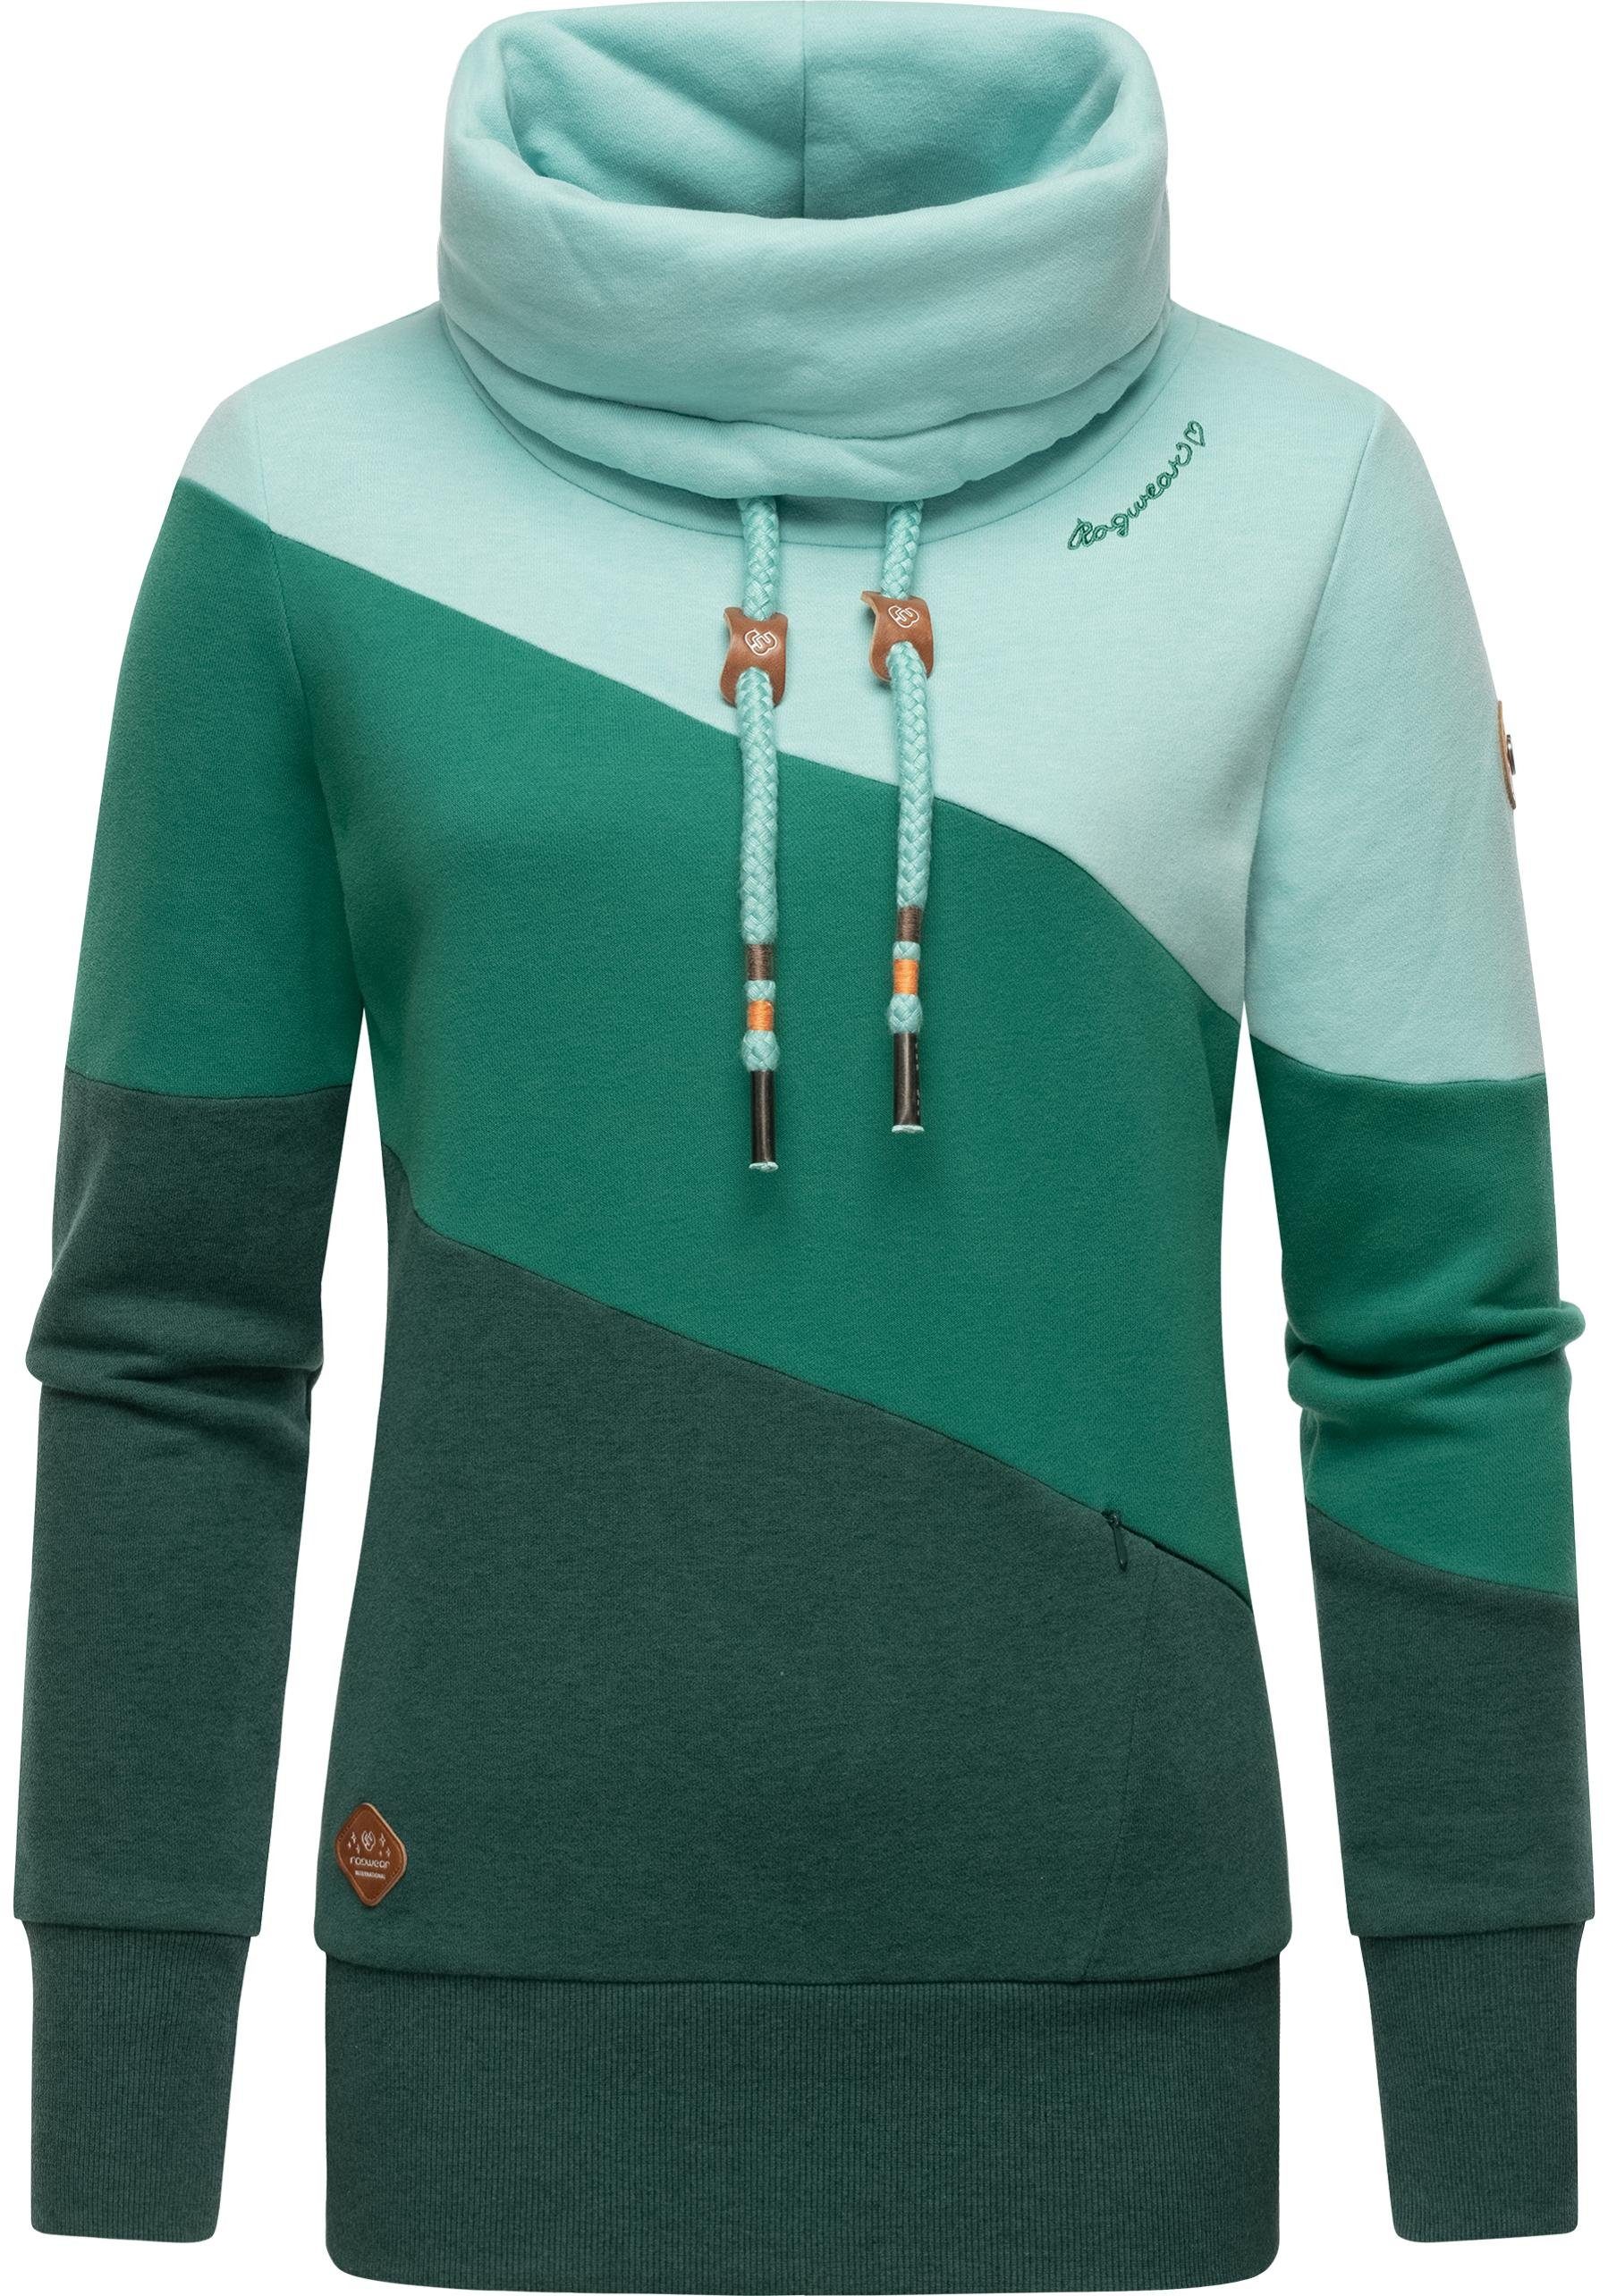 Ragwear Sweatshirt Rumika modischer Longsleeve Pullover mit Schlauchkragen grün